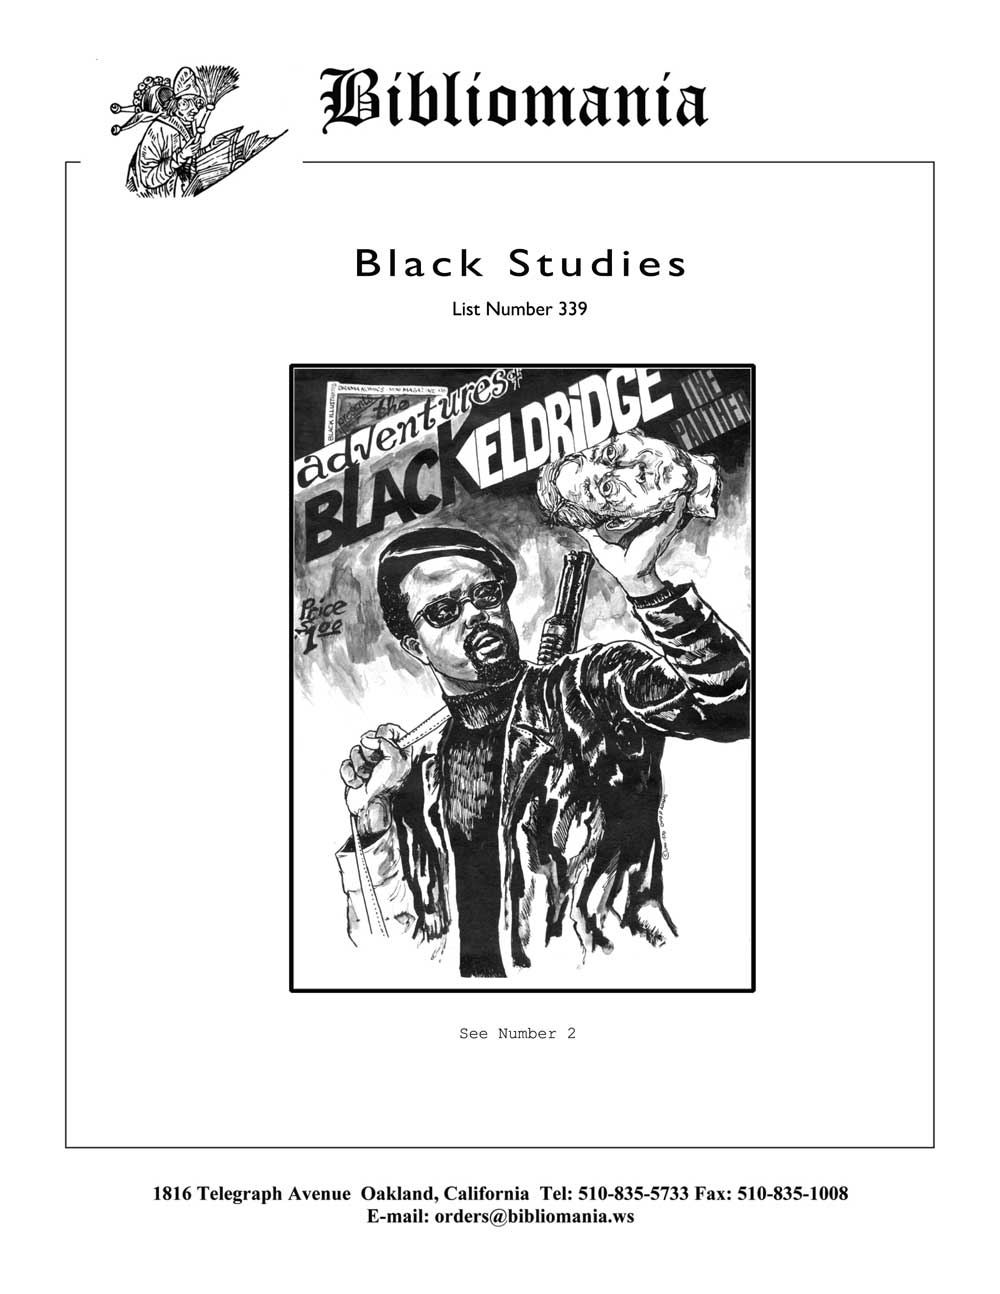 List Number 339 Black Studies